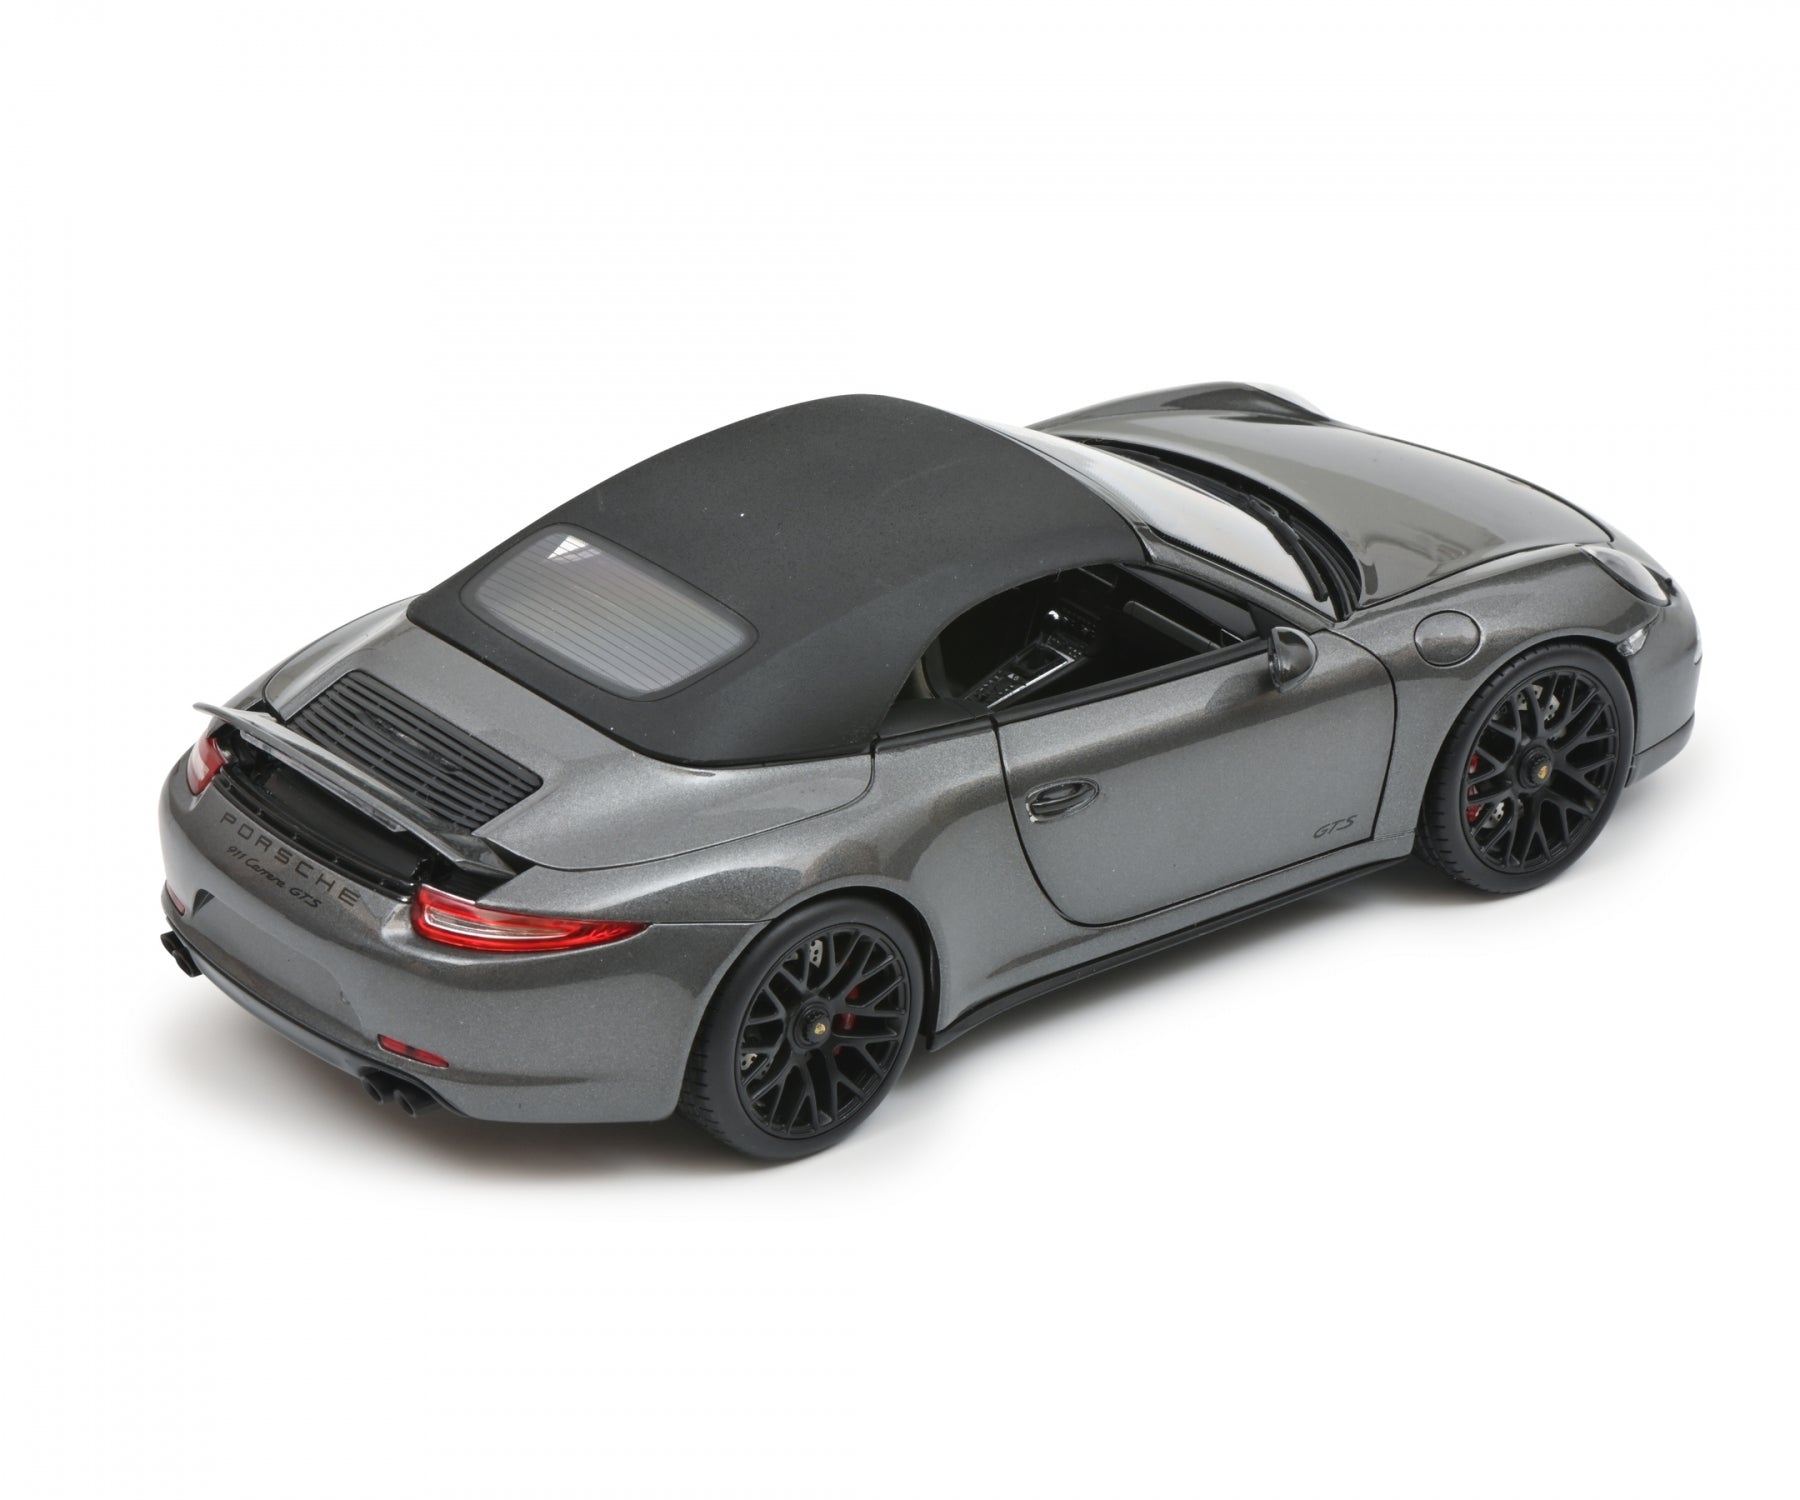 Schuco 1:18 Porsche 911 991 Carrera GTS Cabriolet Grey 450039800